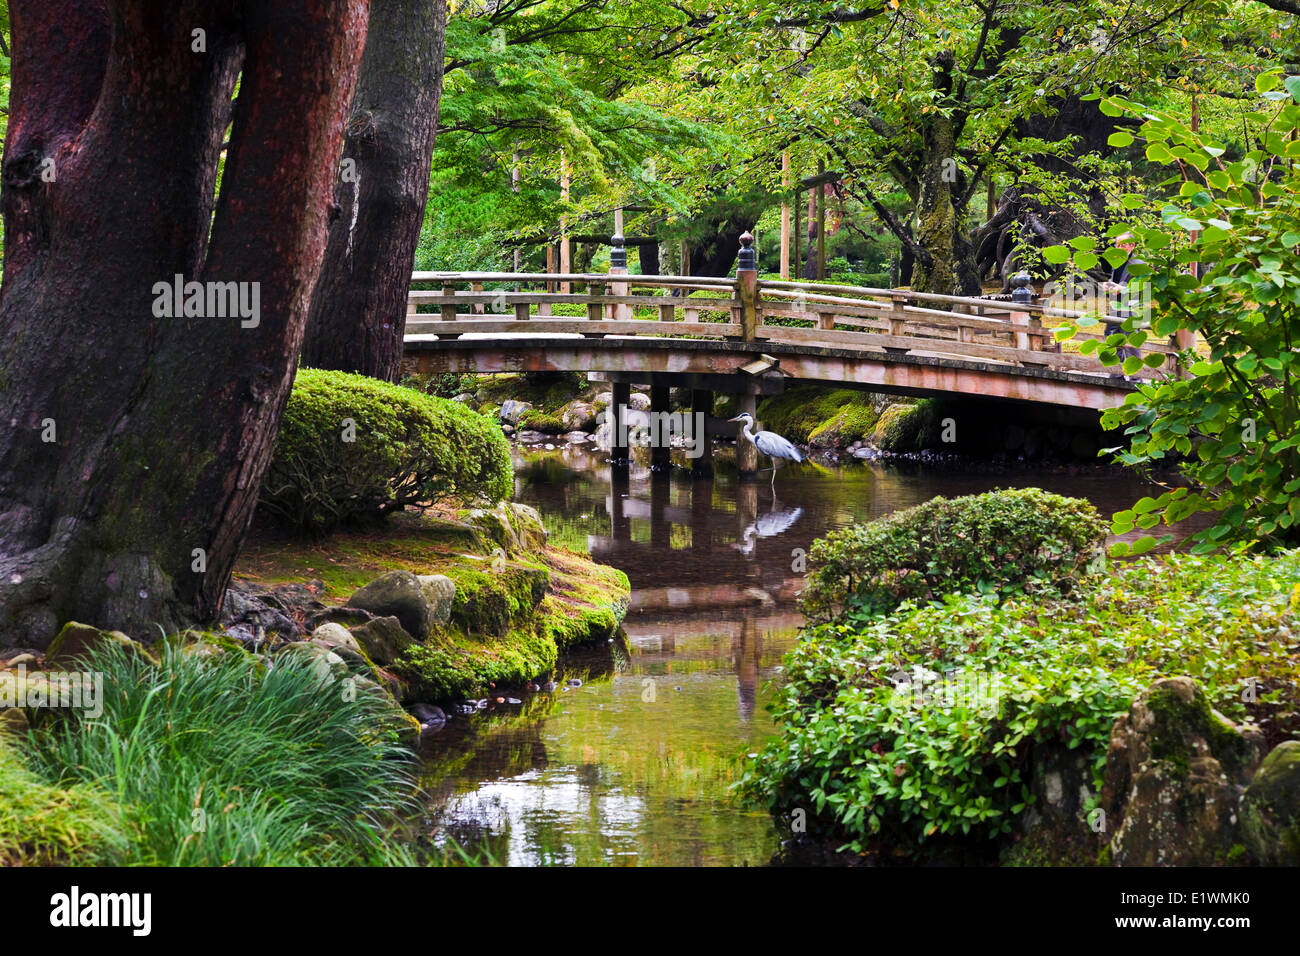 Eines der schönsten Gärten in Japan, Kenrokuen, befindet sich in Kanazawa, Ishikawa, Japan Stockfoto